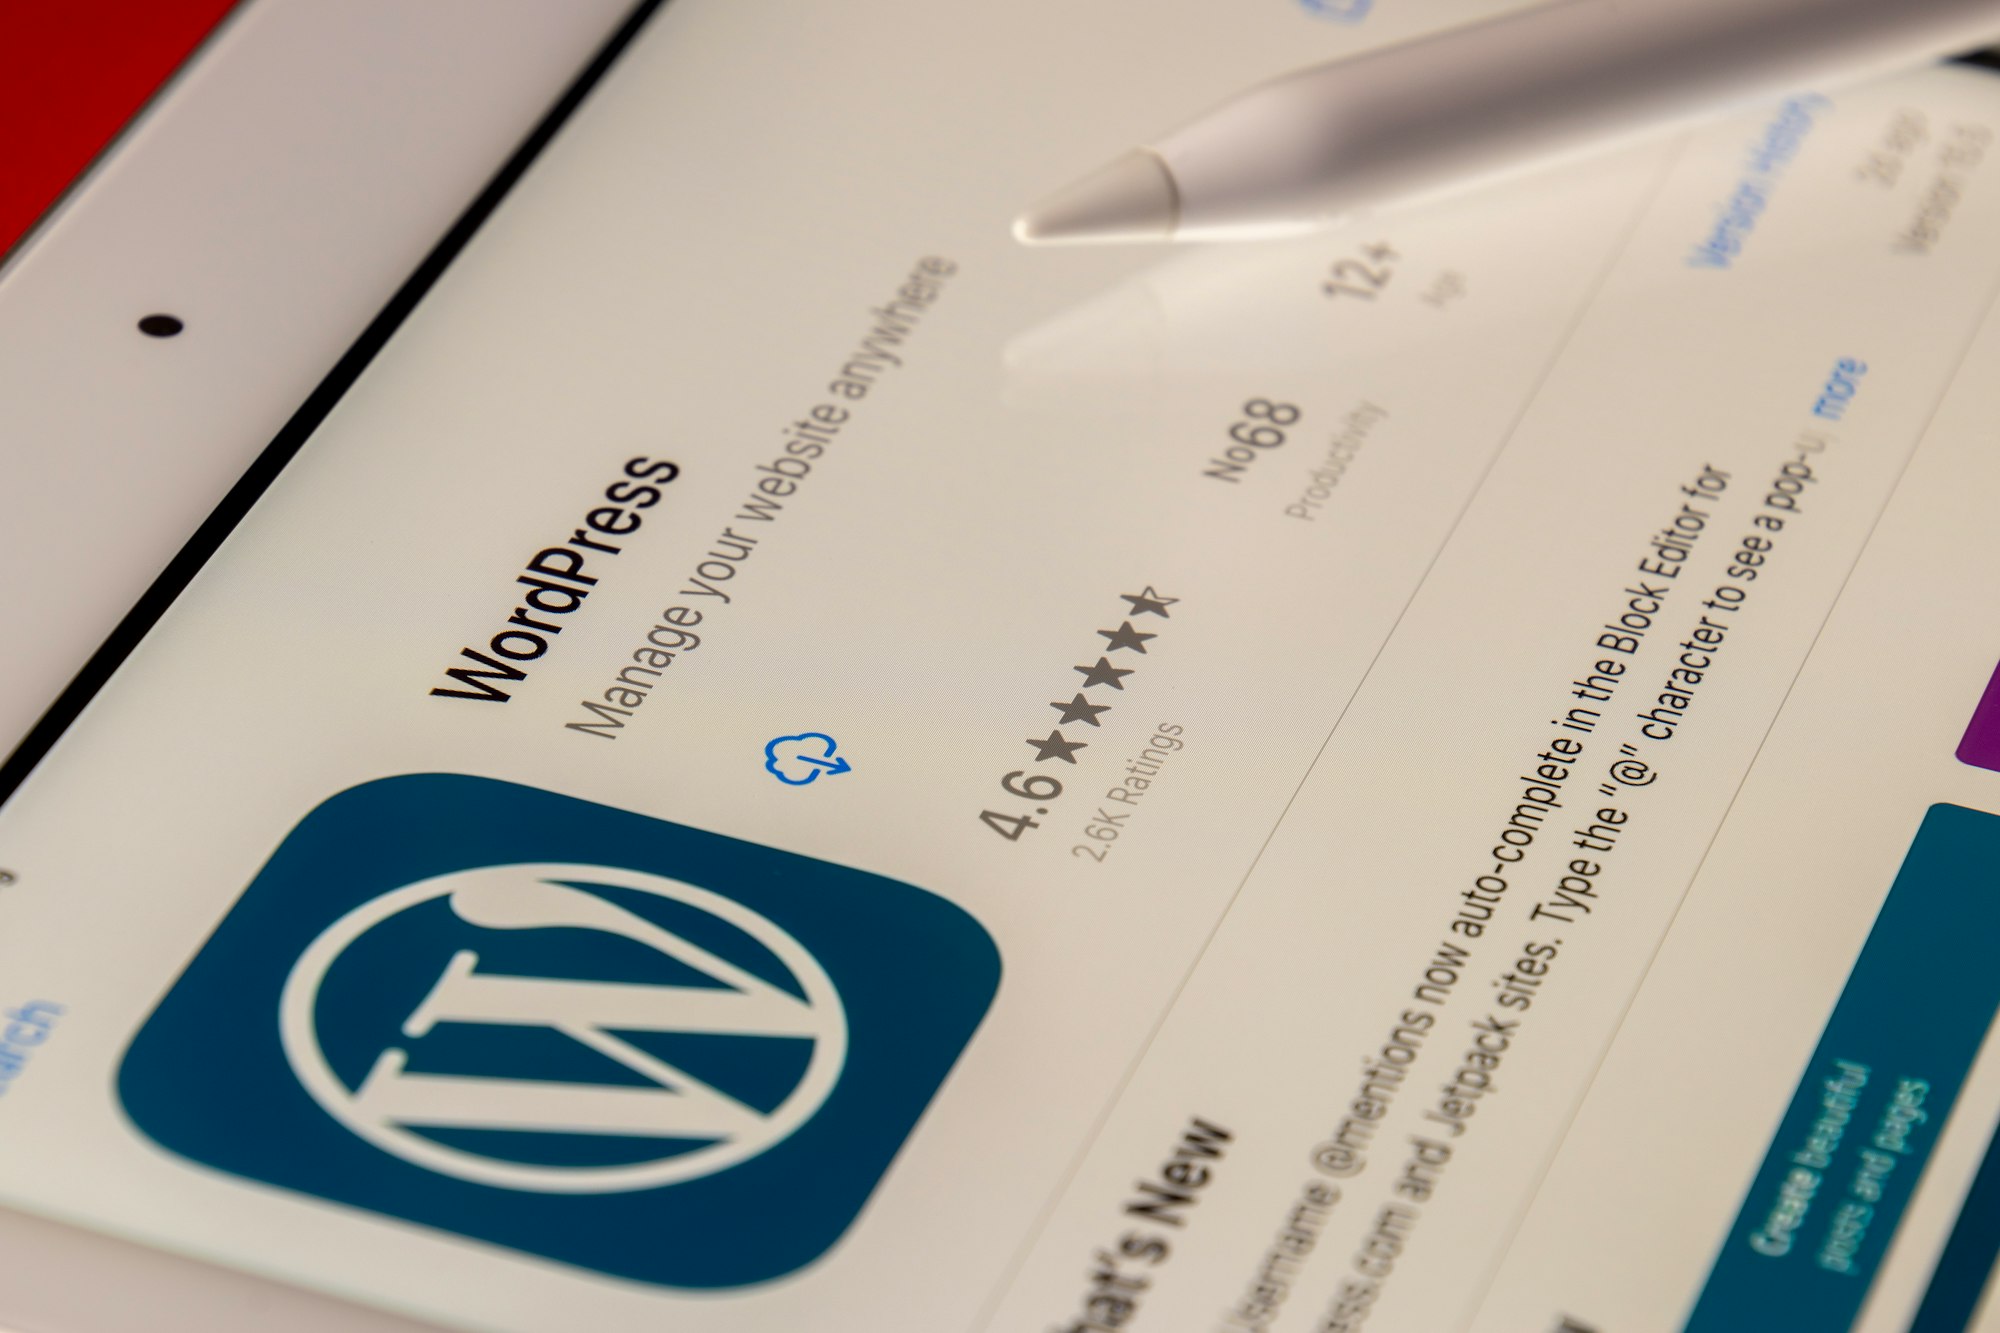 “WordPress’in desteğiyle” yazısını kaldırma